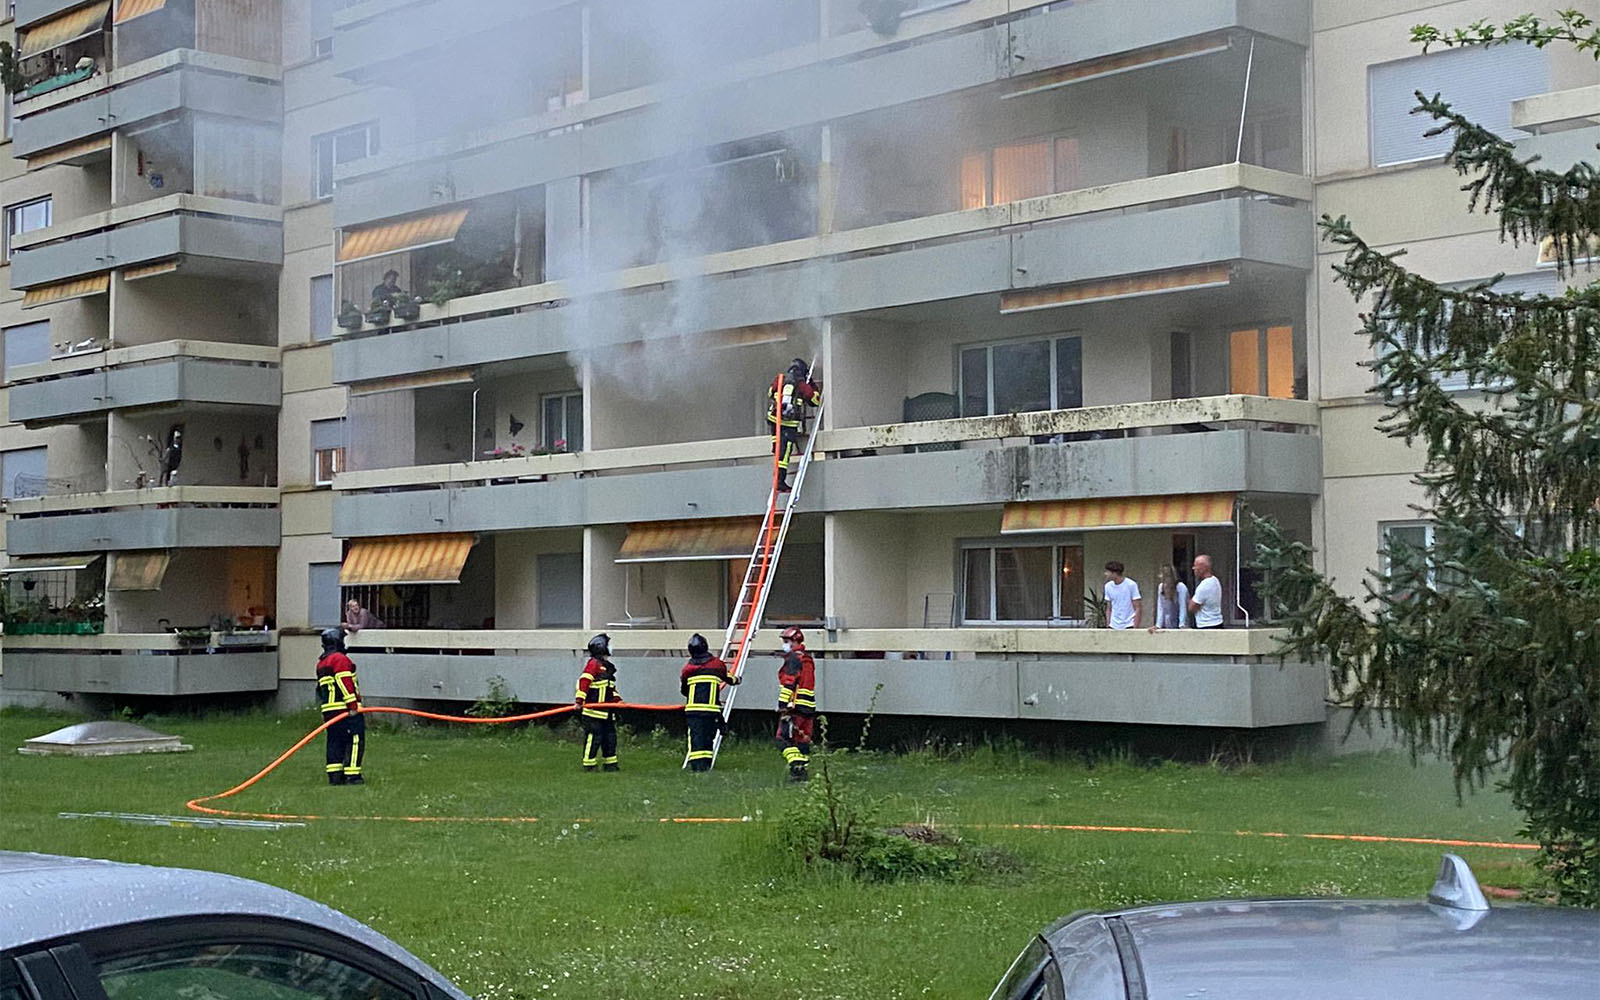 Fünf Feuerwehrleute löschen mit einem Strahlrohr ein Feuer in einem Wohnblock. Nachbarn stehen auf den Balkonen und sehen zu.